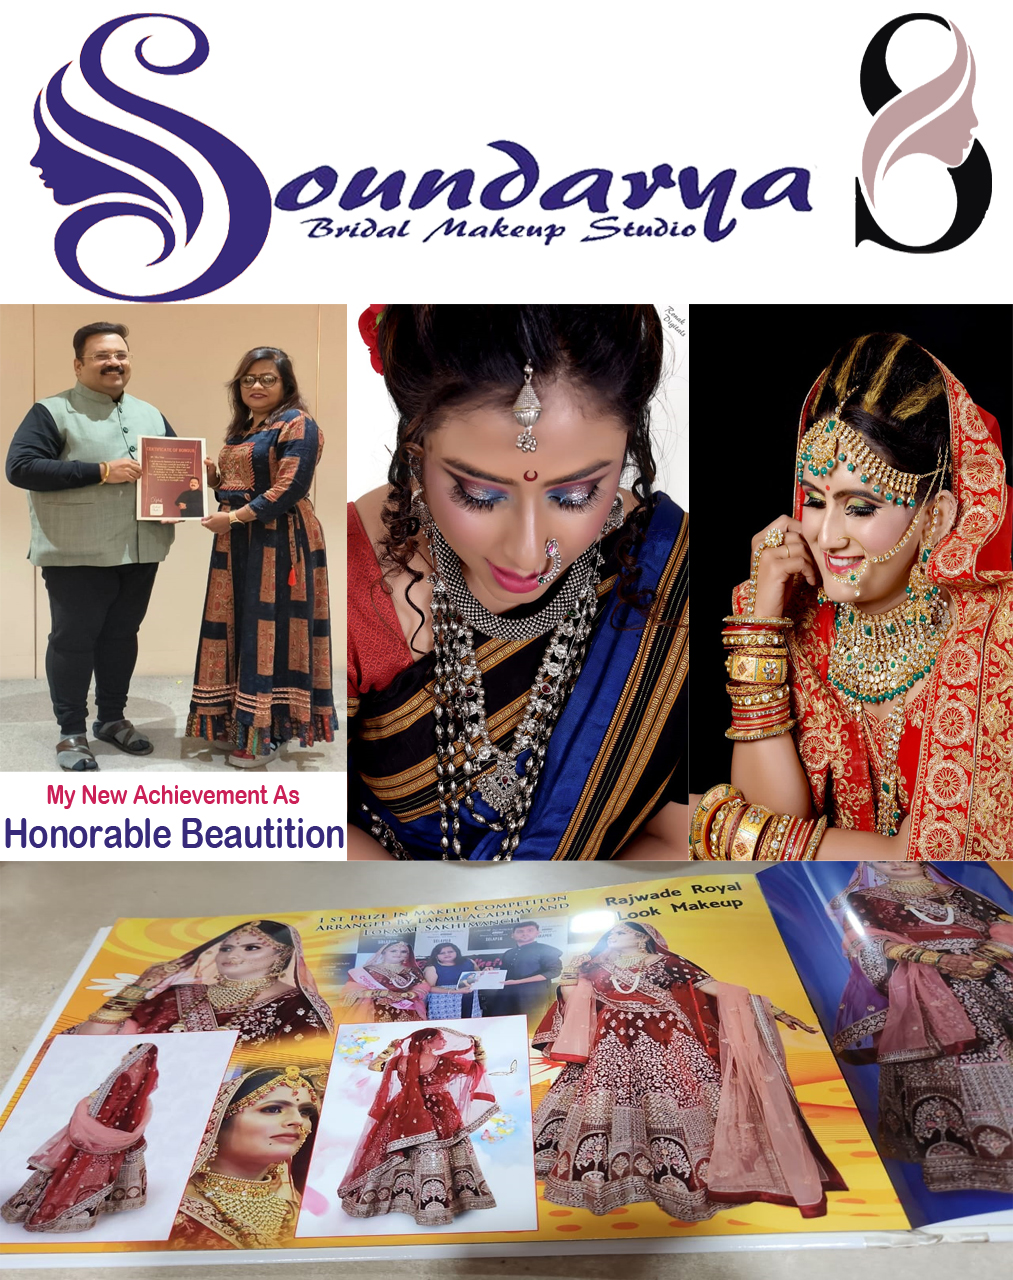 Soundrya Beauty Clinic and Tranining Center